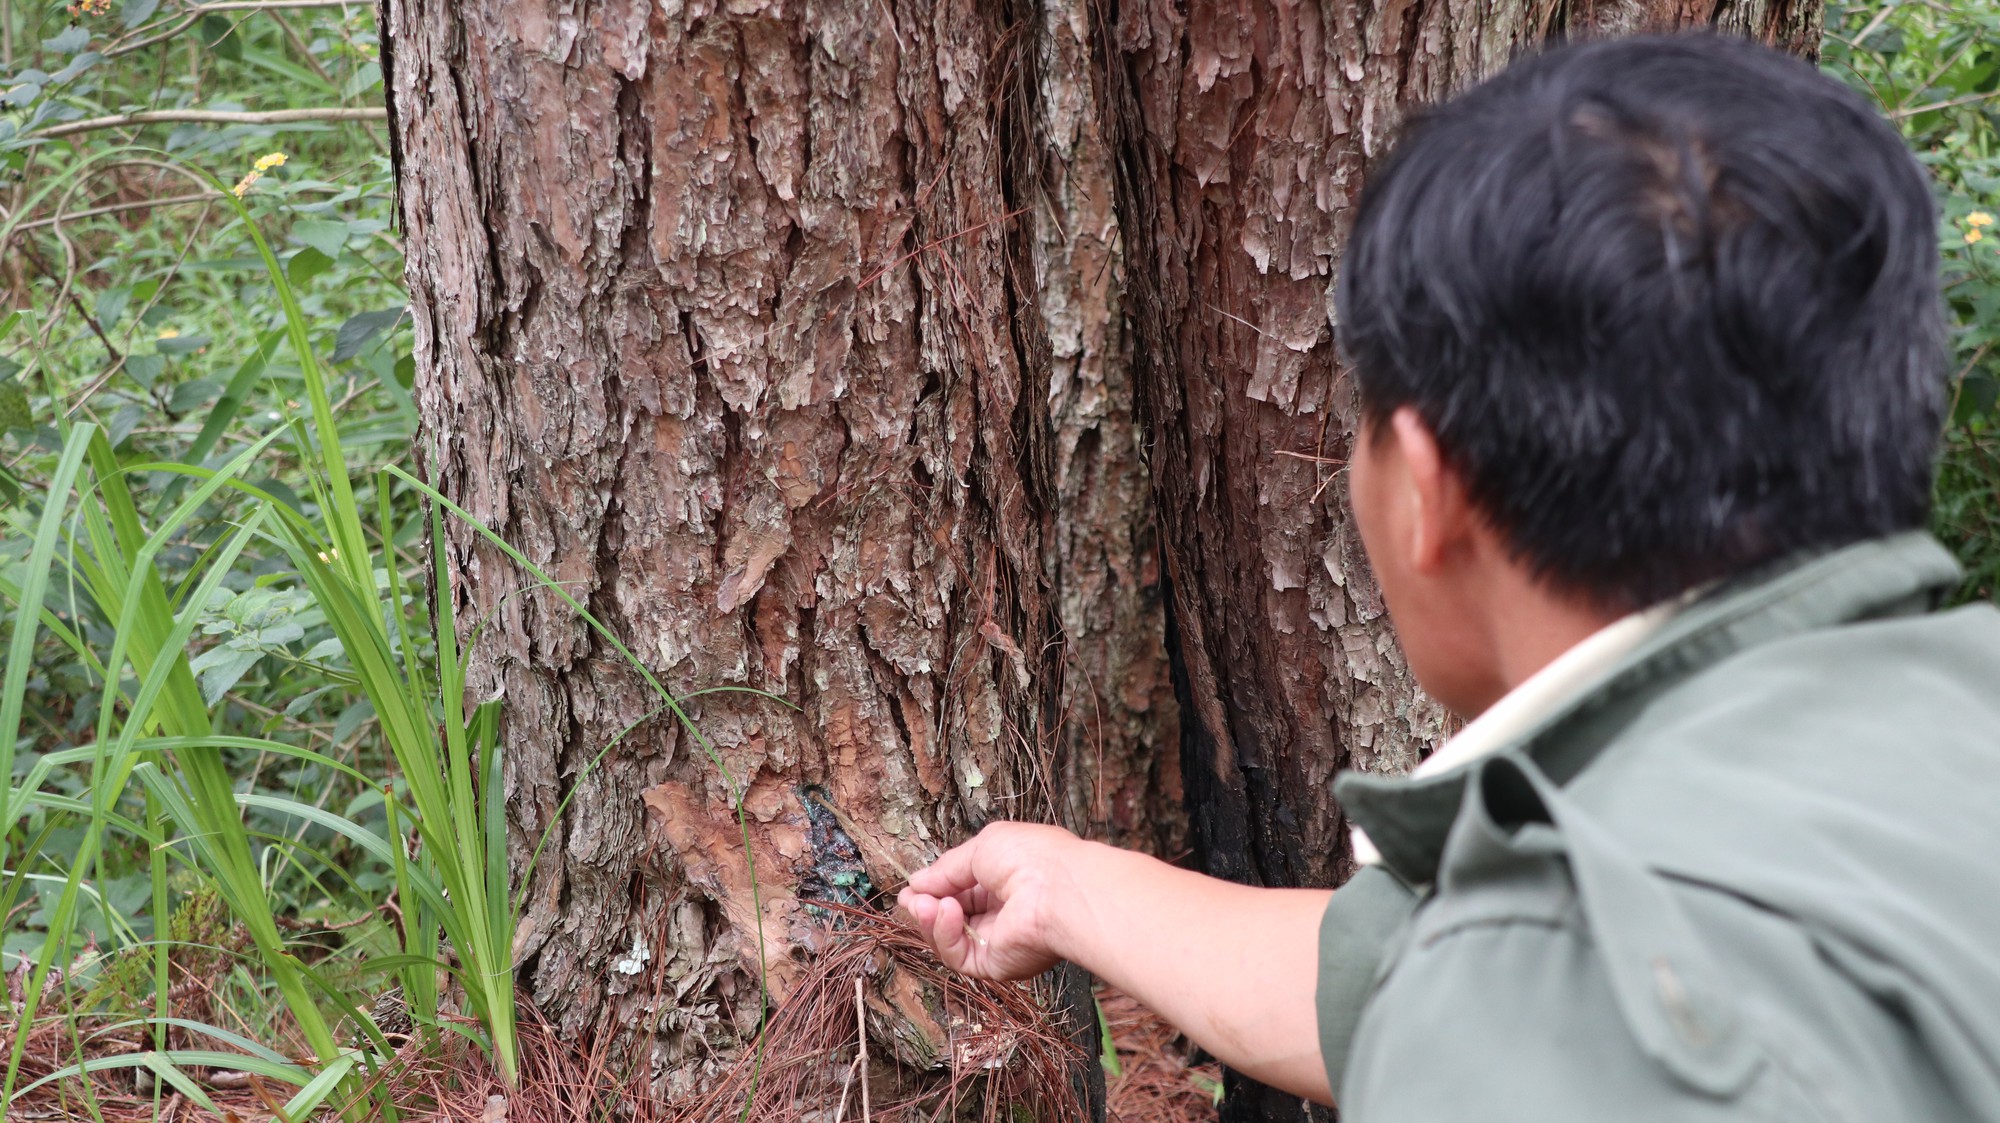 Kiểm điểm 1 tập thể, 3 cá nhân nhân liên quan vụ rừng thông bị “đầu độc” tại Lâm Đồng - Ảnh 2.